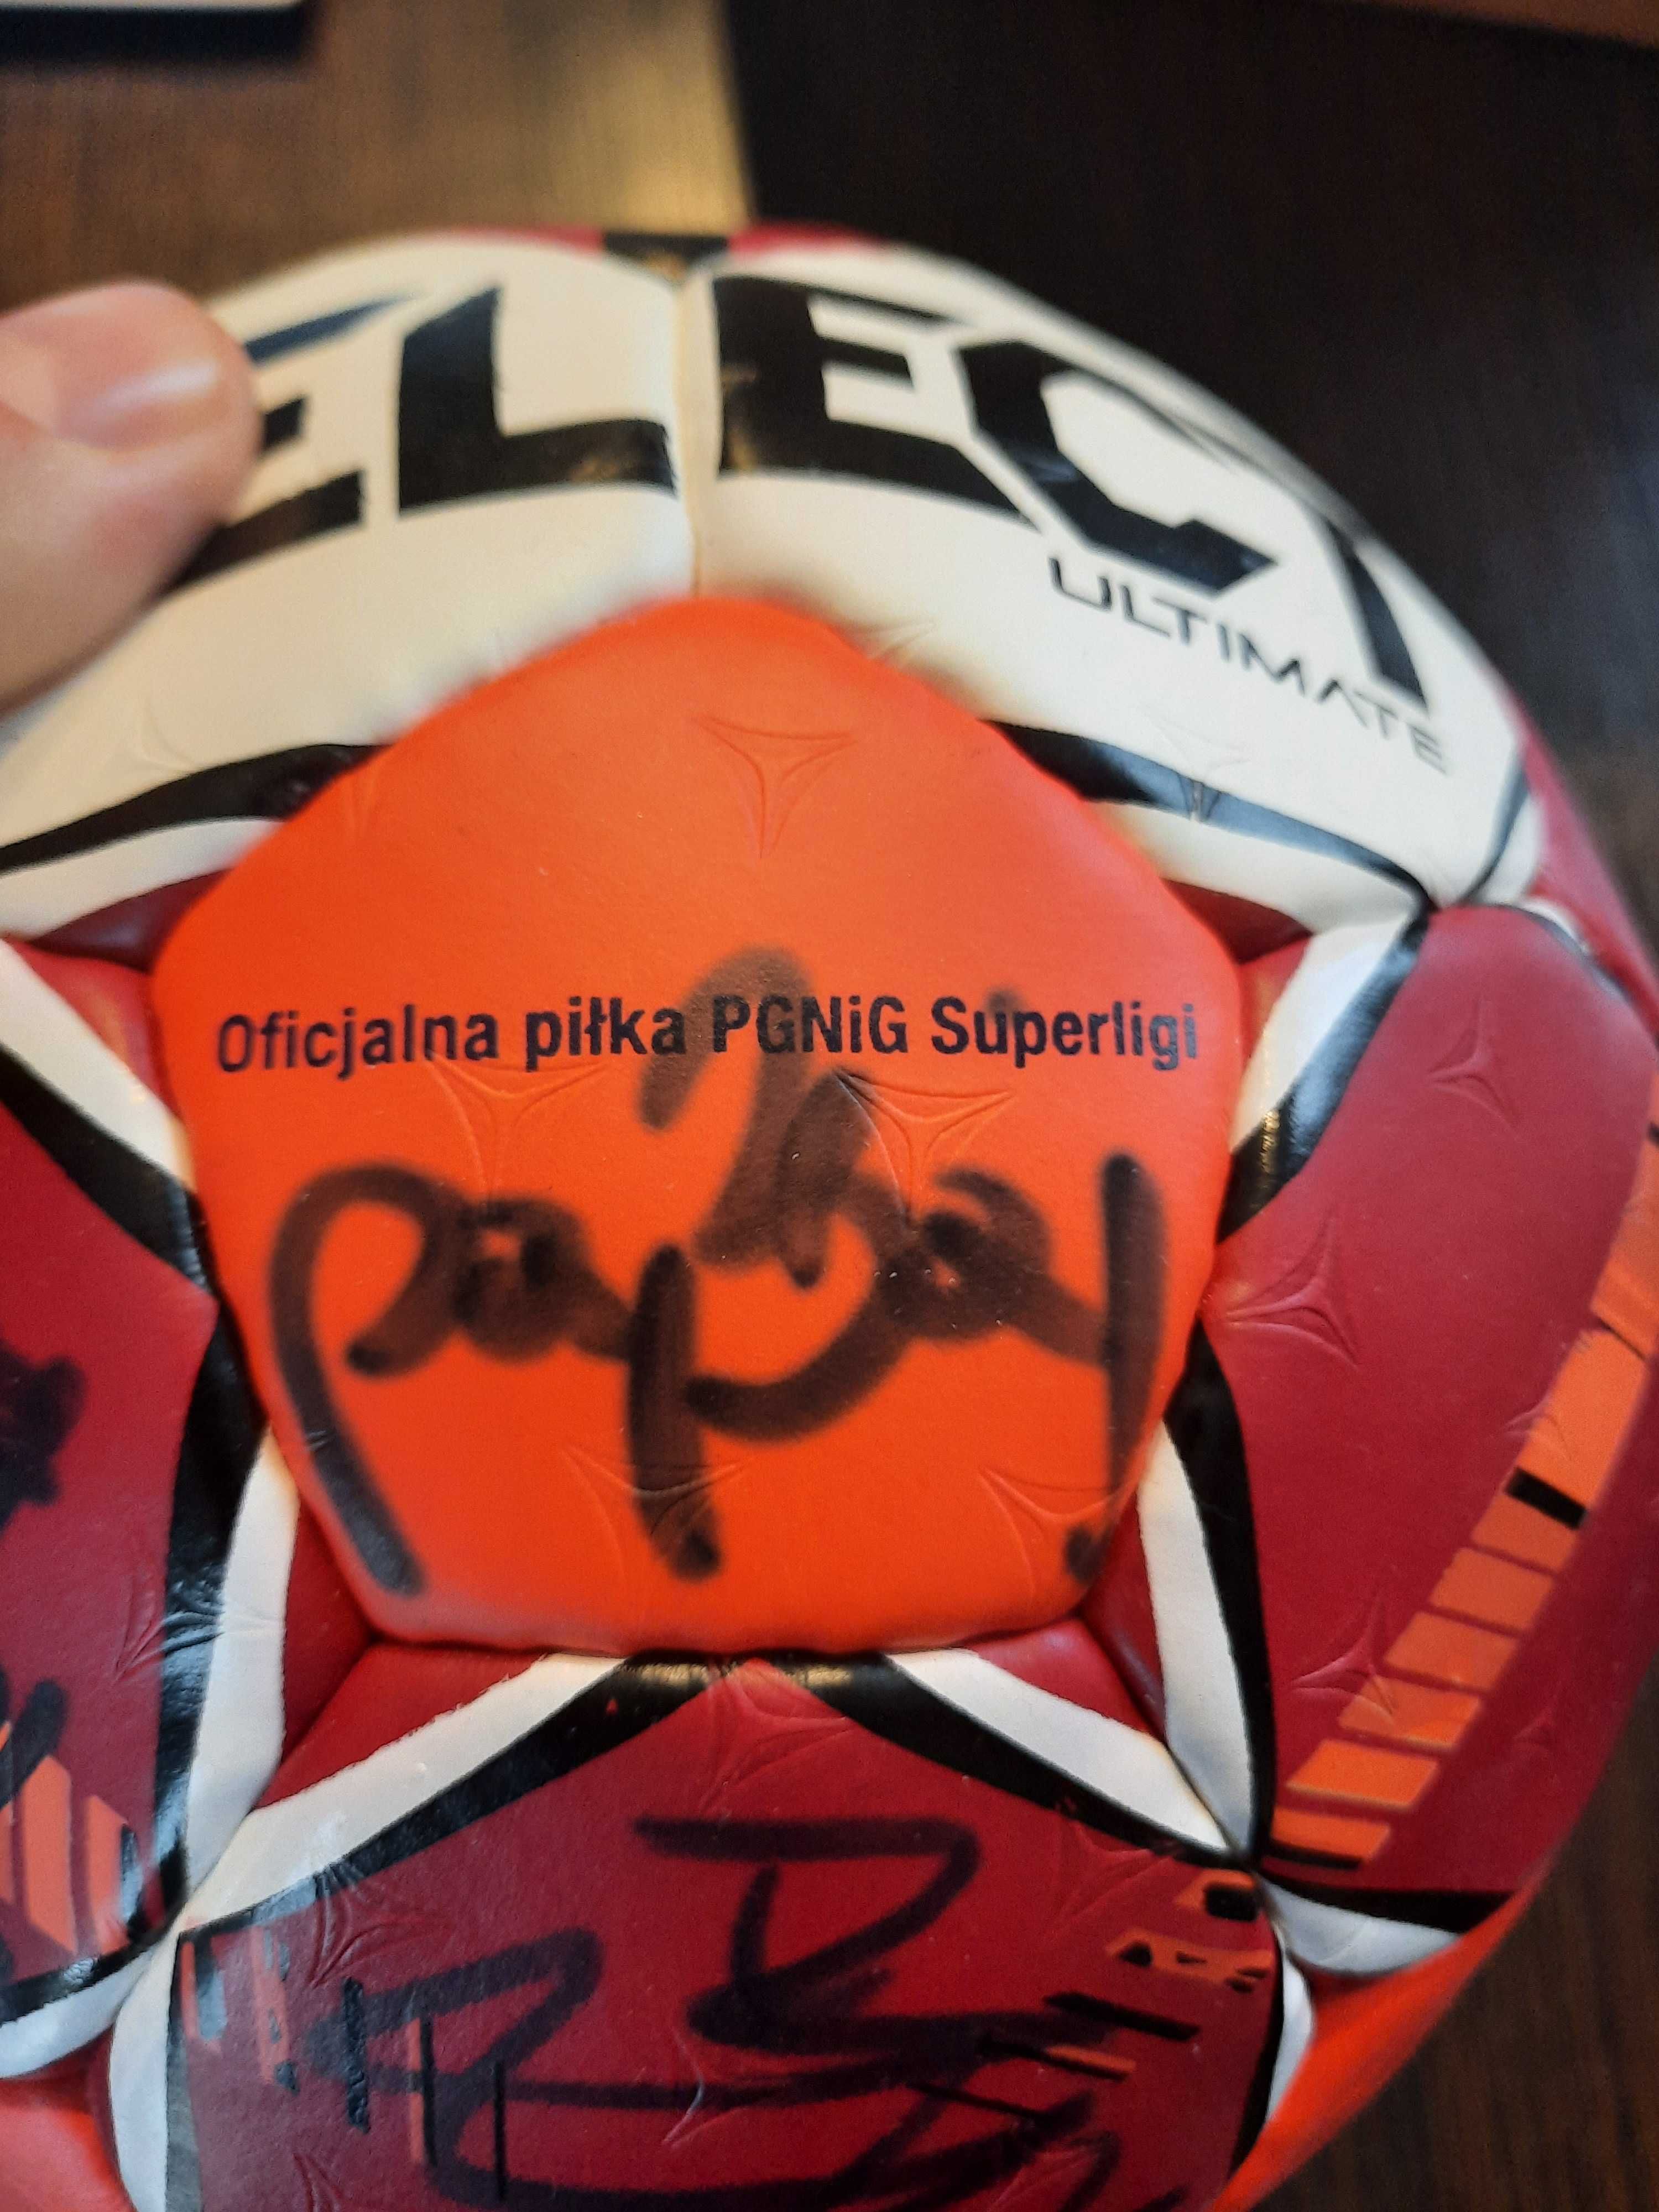 Piłka z autografami zawod. Energa Wybrzeże Gdańsk